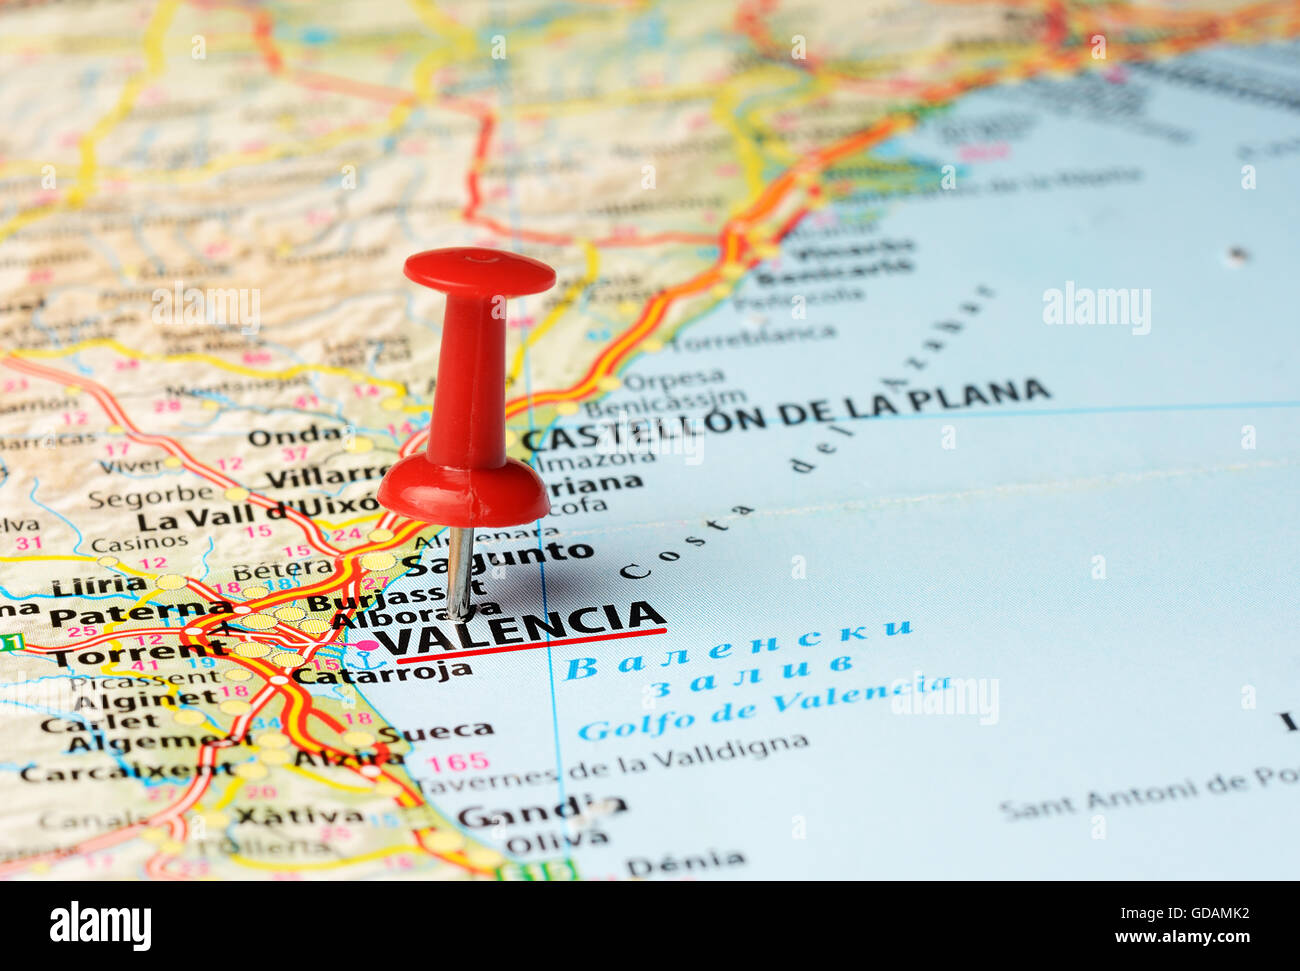 Close up de Valence , Espagne carte avec broche rouge Banque D'Images